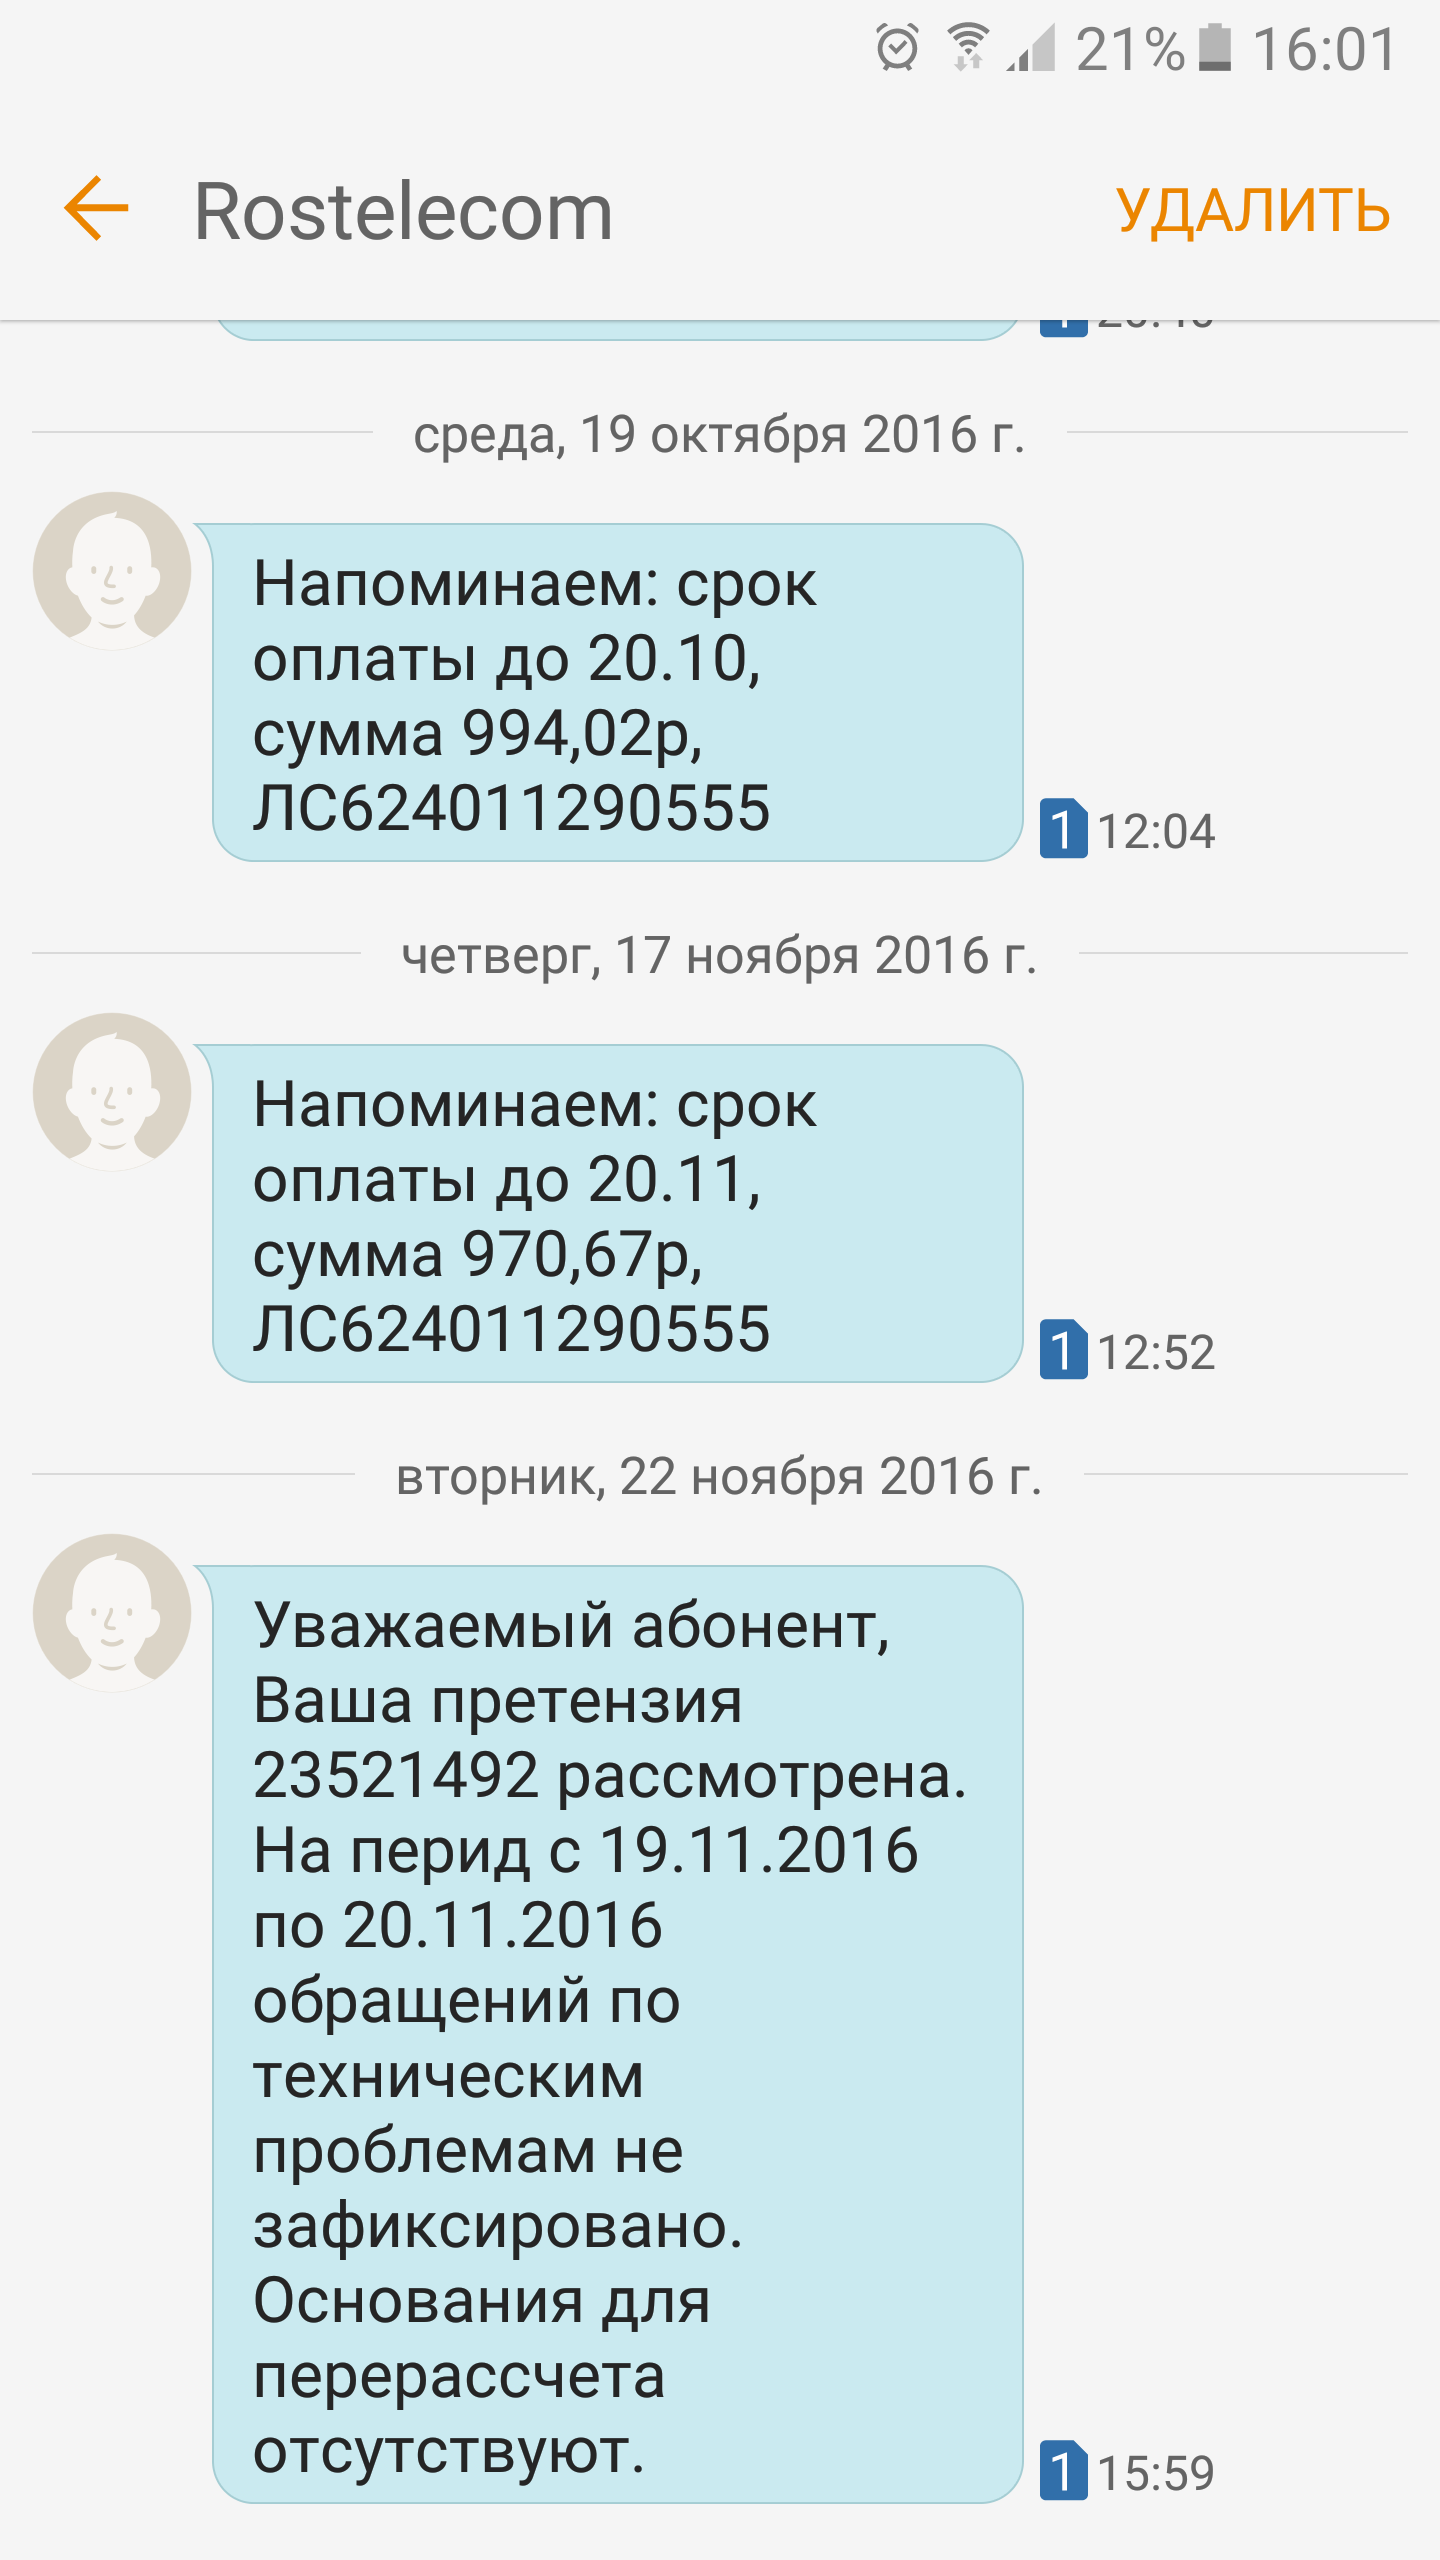 Саяногорск Инфо - screenshot_20161122-160125.png, Скачано: 391